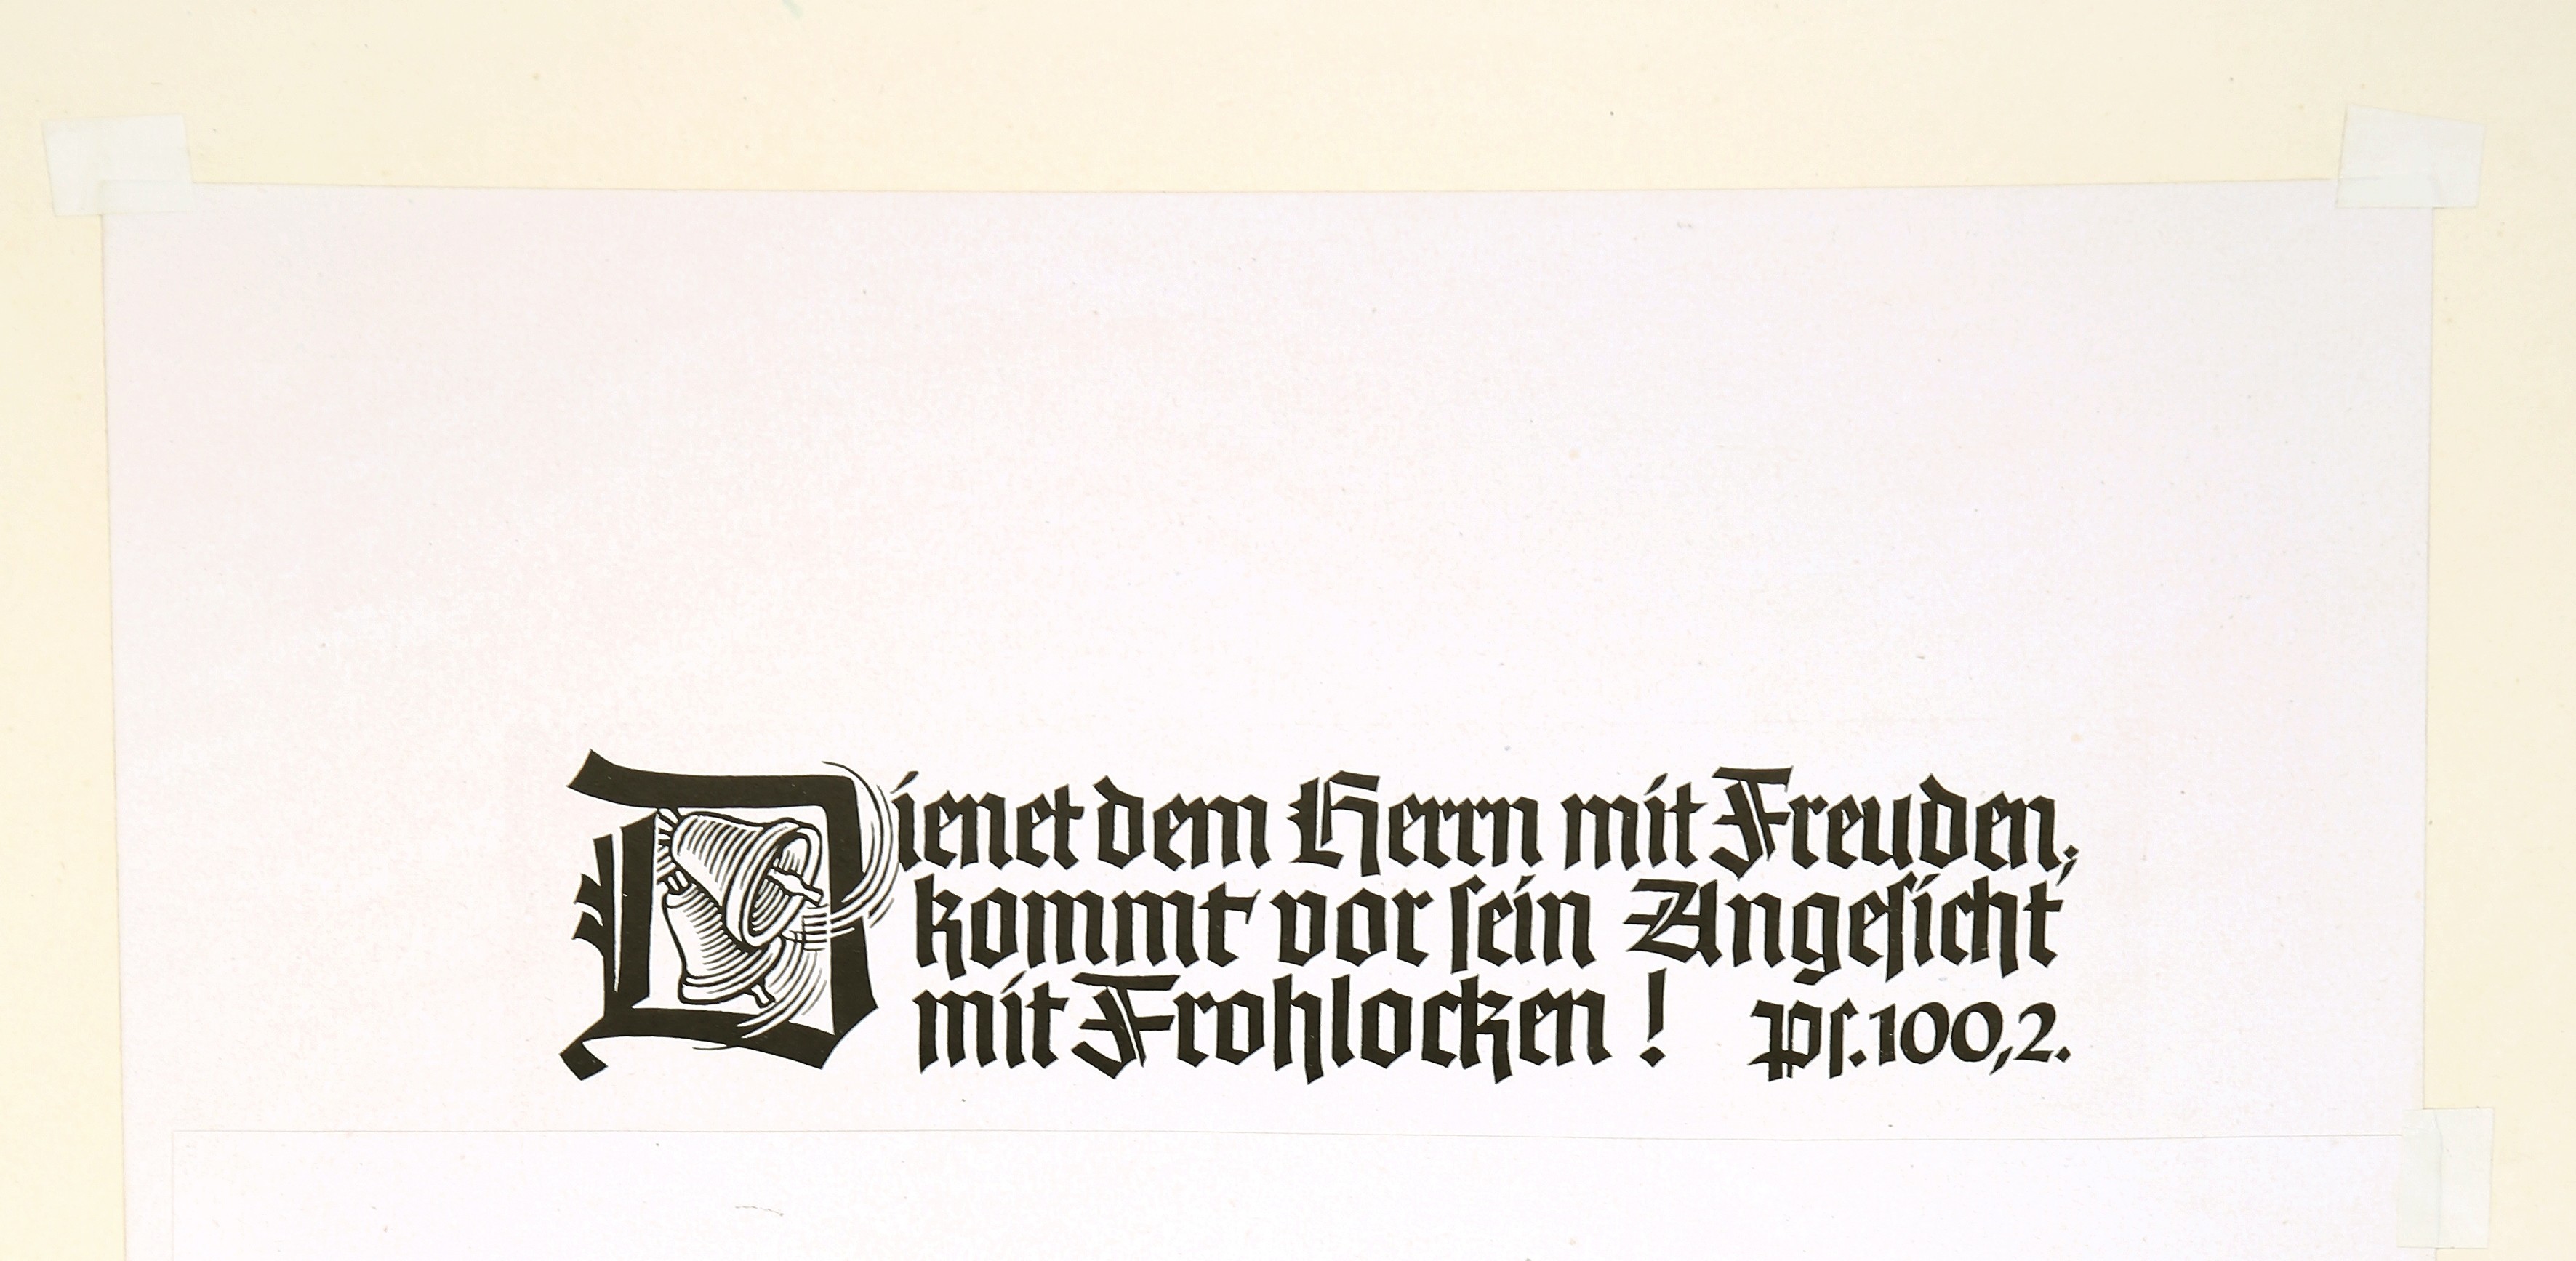 Dienet dem Herrn mit Freuden (Stiftung Christliche Kunst Wittenberg CC BY-NC-SA)